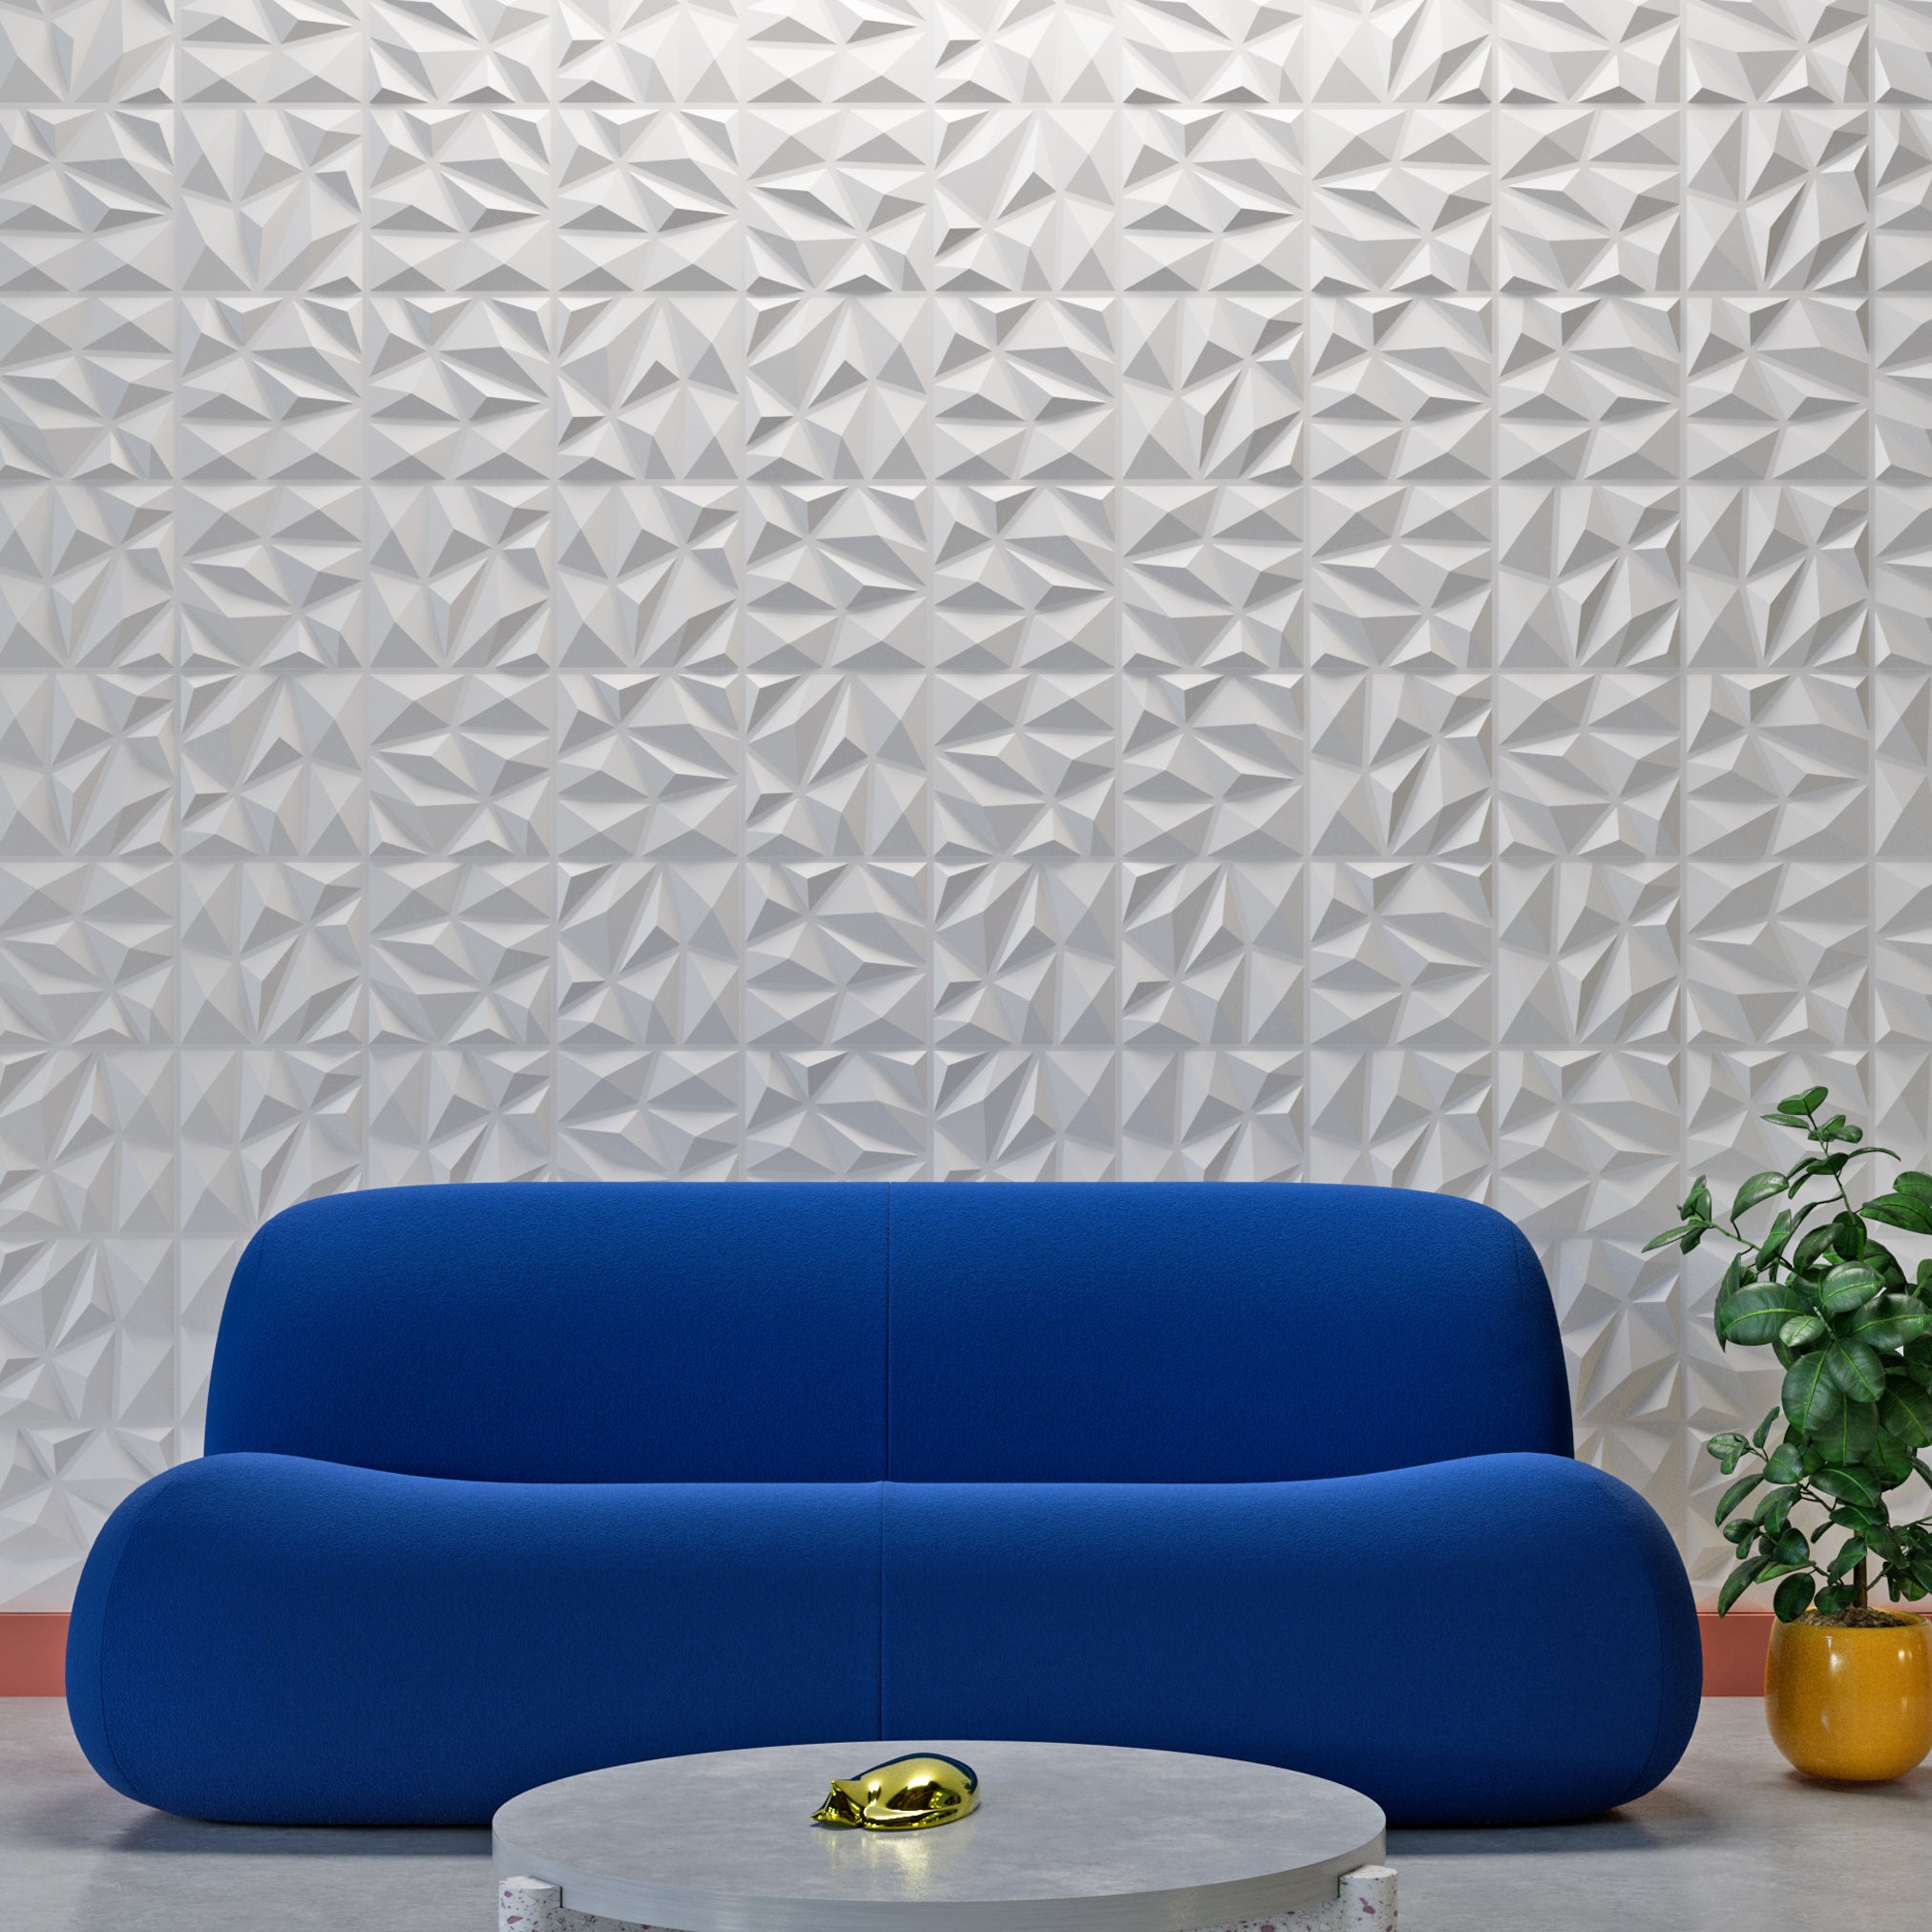 Fácil de despegar y pegar, pegar, panel de pared decorativo con textura de  plástico duradero en 3D, diseño de ondas sin huecos. 12 paneles. 32 pies